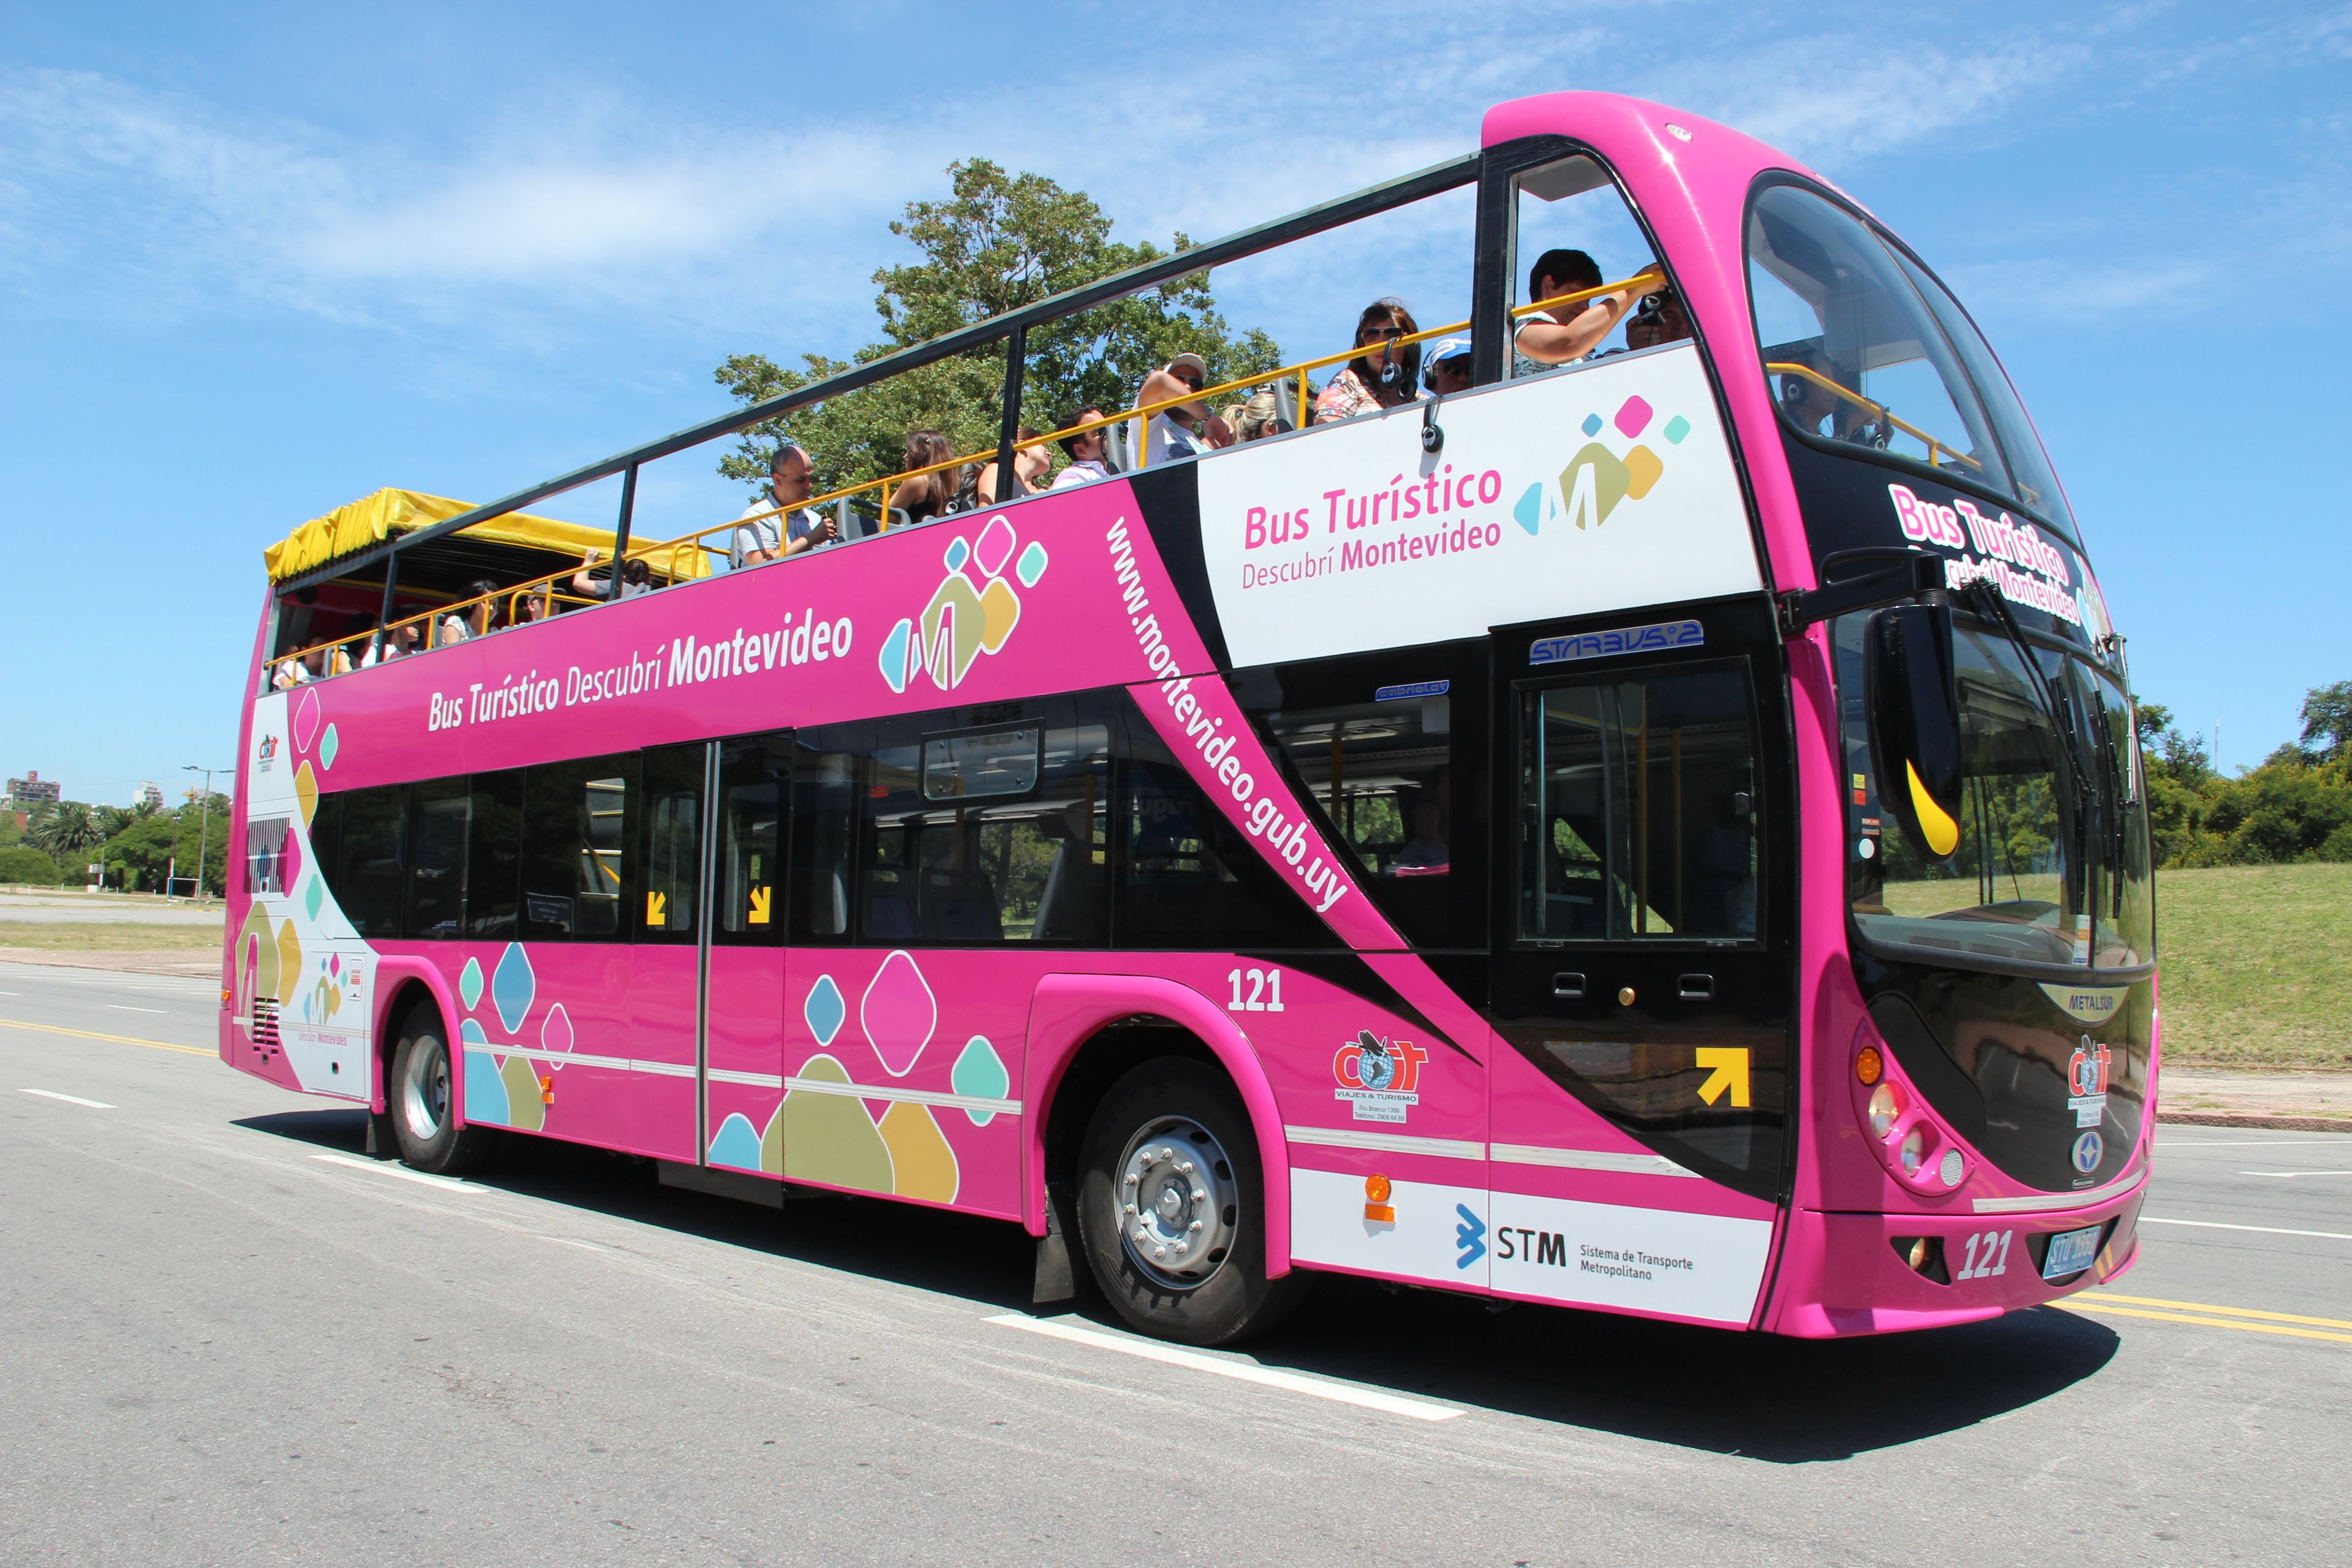 Гоу автобус. Tourist Bus. Сравнение Beulas BS (Bus turistico) и экскурсионный автобус hff6121gs-3.